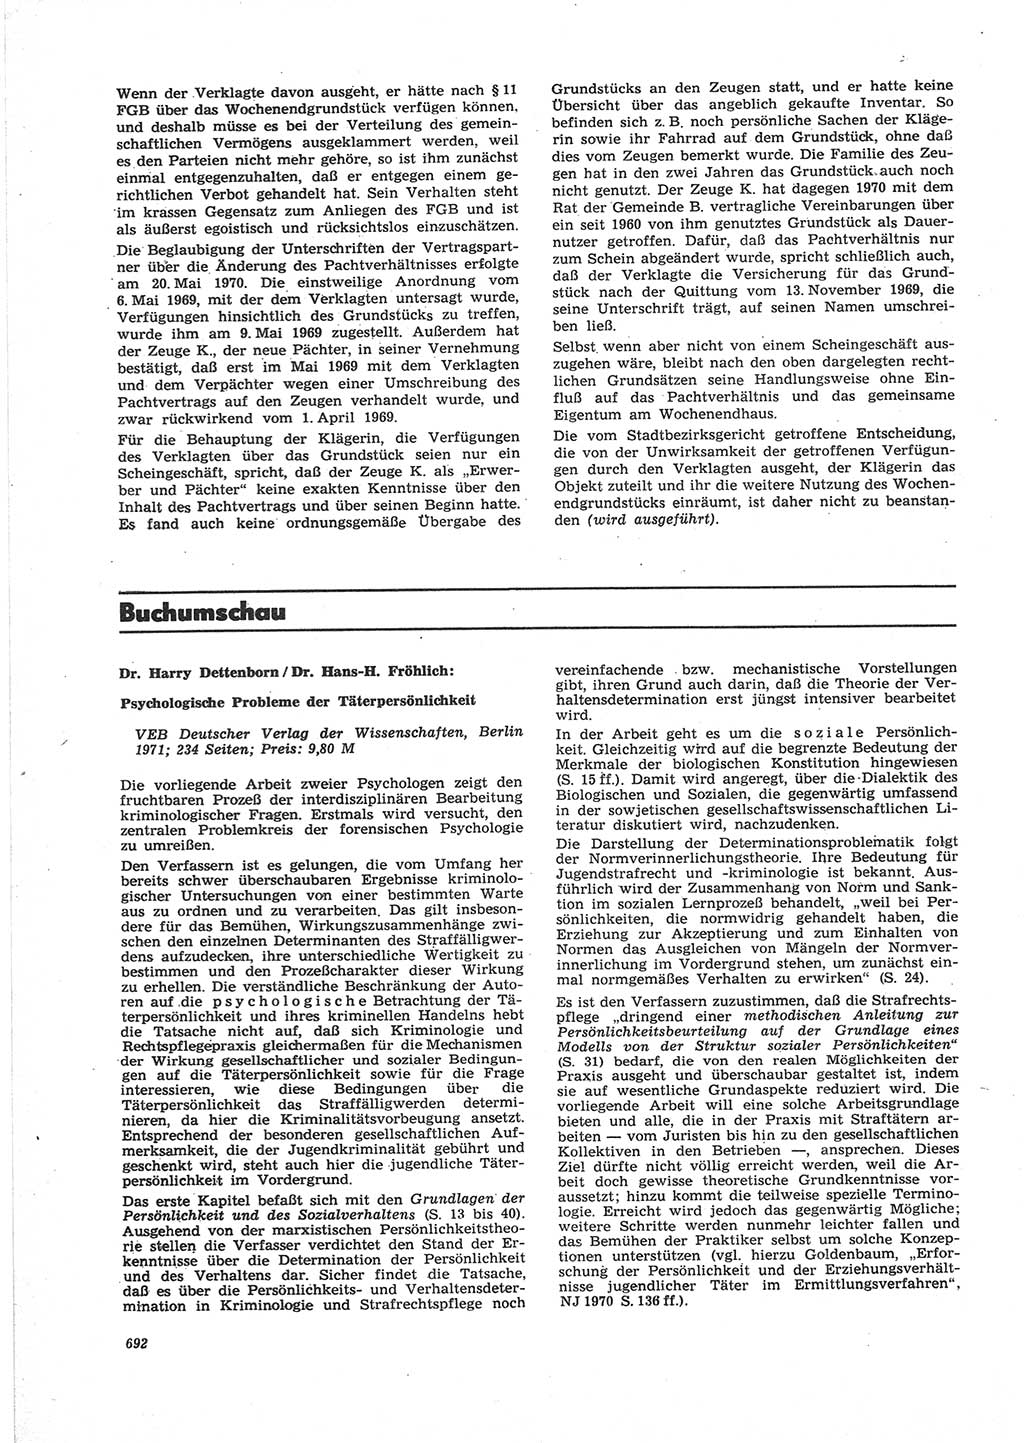 Neue Justiz (NJ), Zeitschrift für Recht und Rechtswissenschaft [Deutsche Demokratische Republik (DDR)], 25. Jahrgang 1971, Seite 692 (NJ DDR 1971, S. 692)